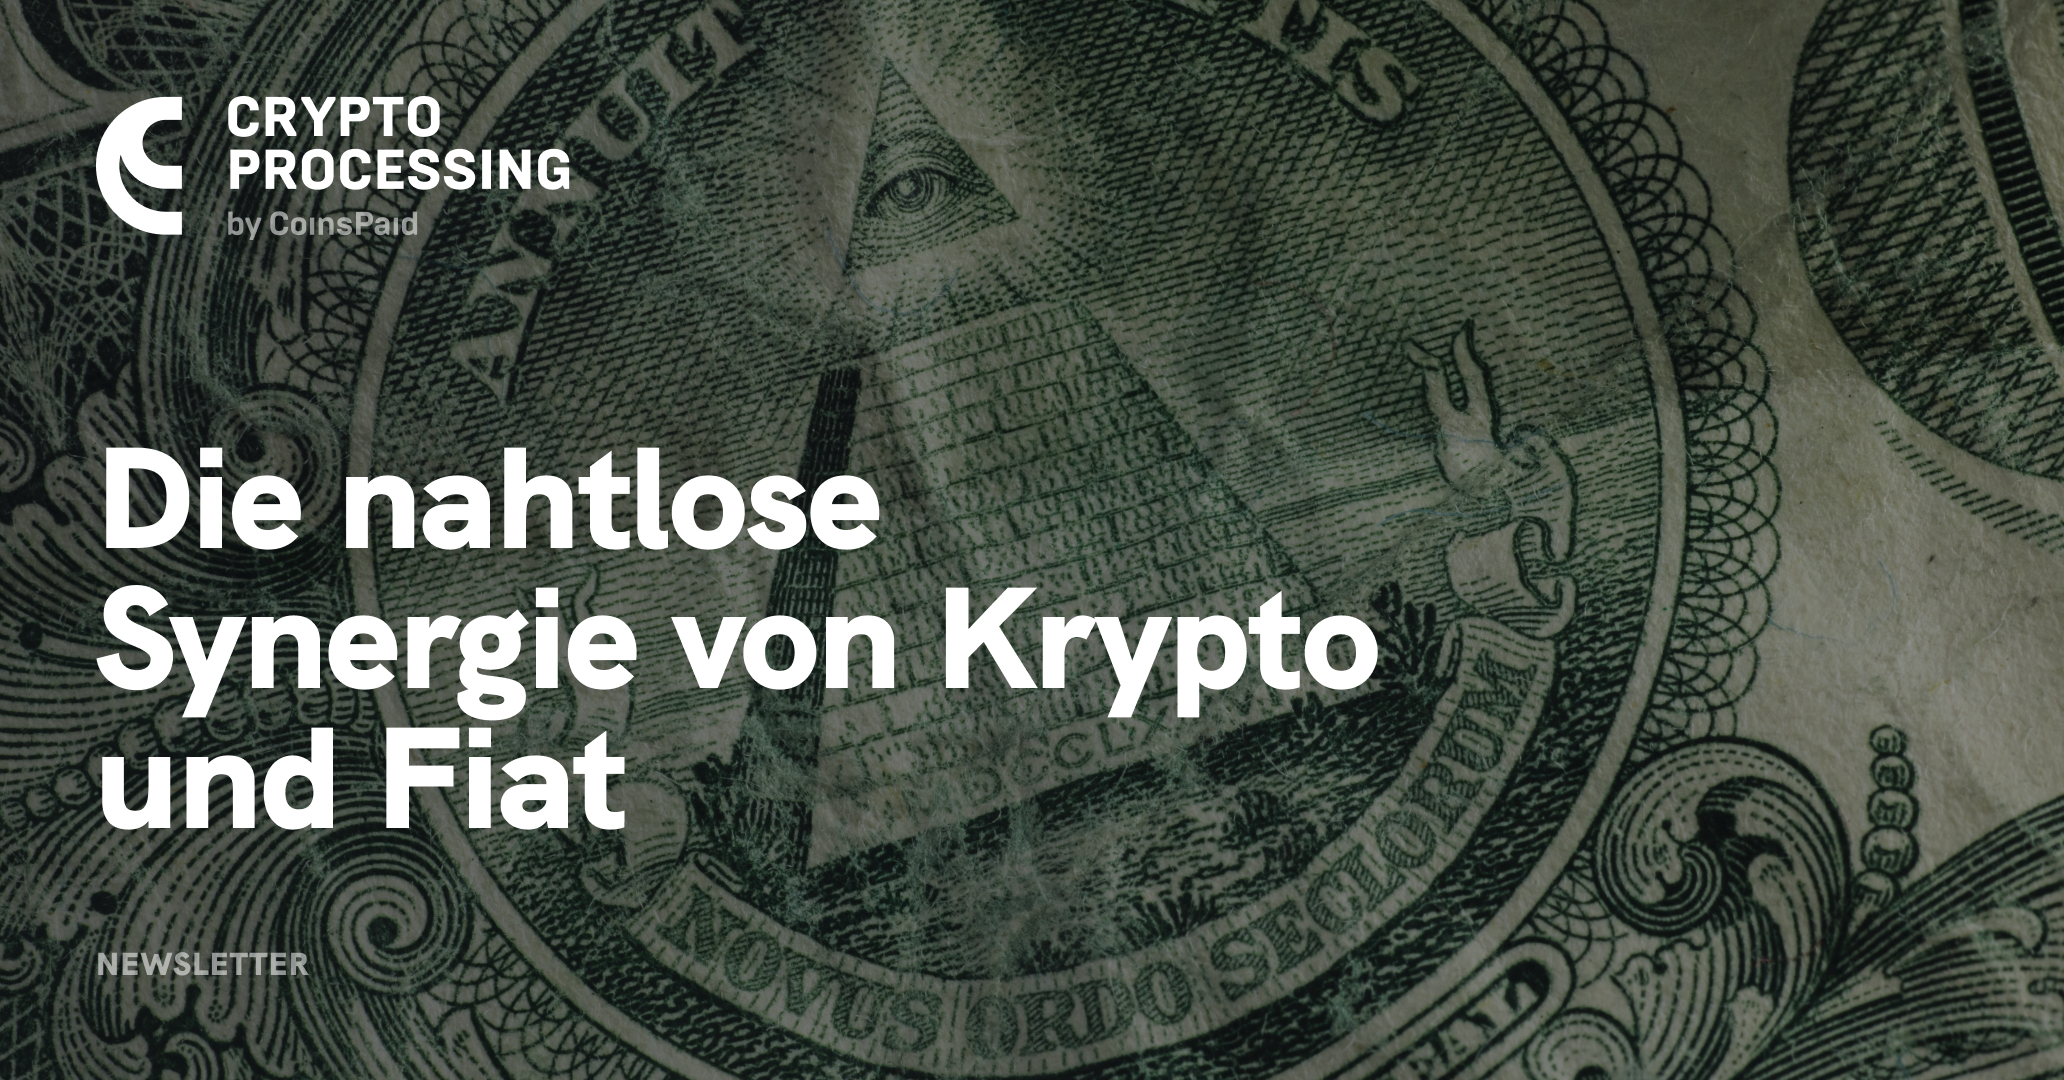 Cryptoprocessing.com: Vorreiter bei der Krypto-Fiat Integration